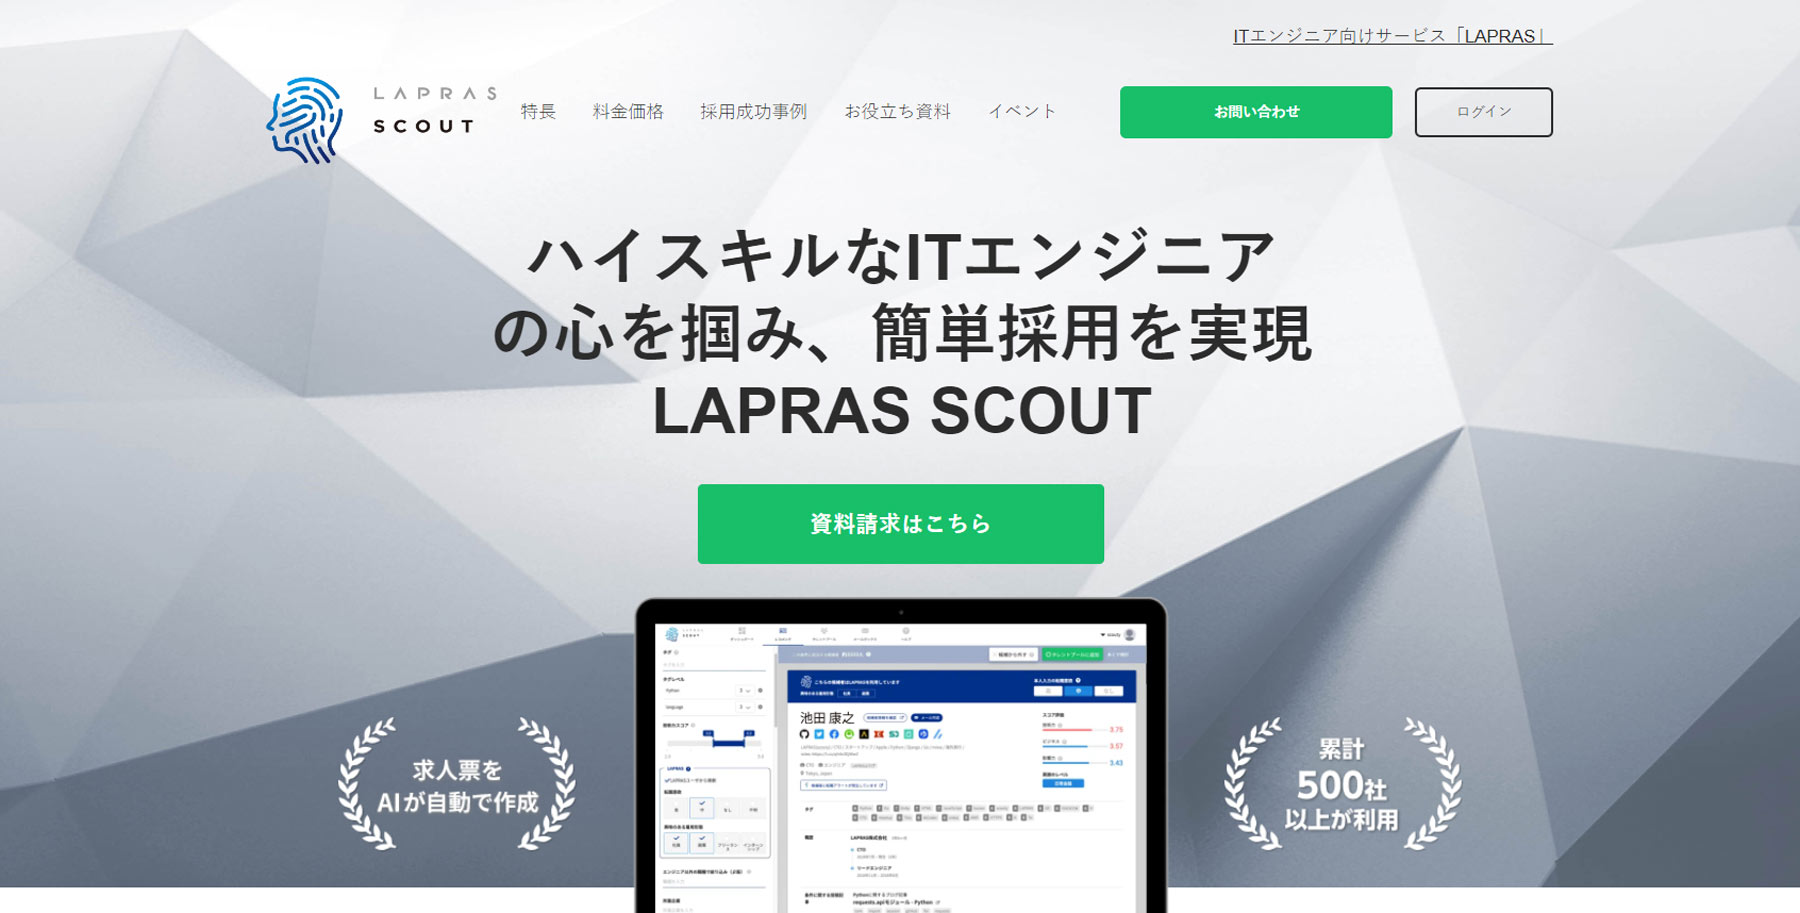 LAPRAS SCOUT公式Webサイト